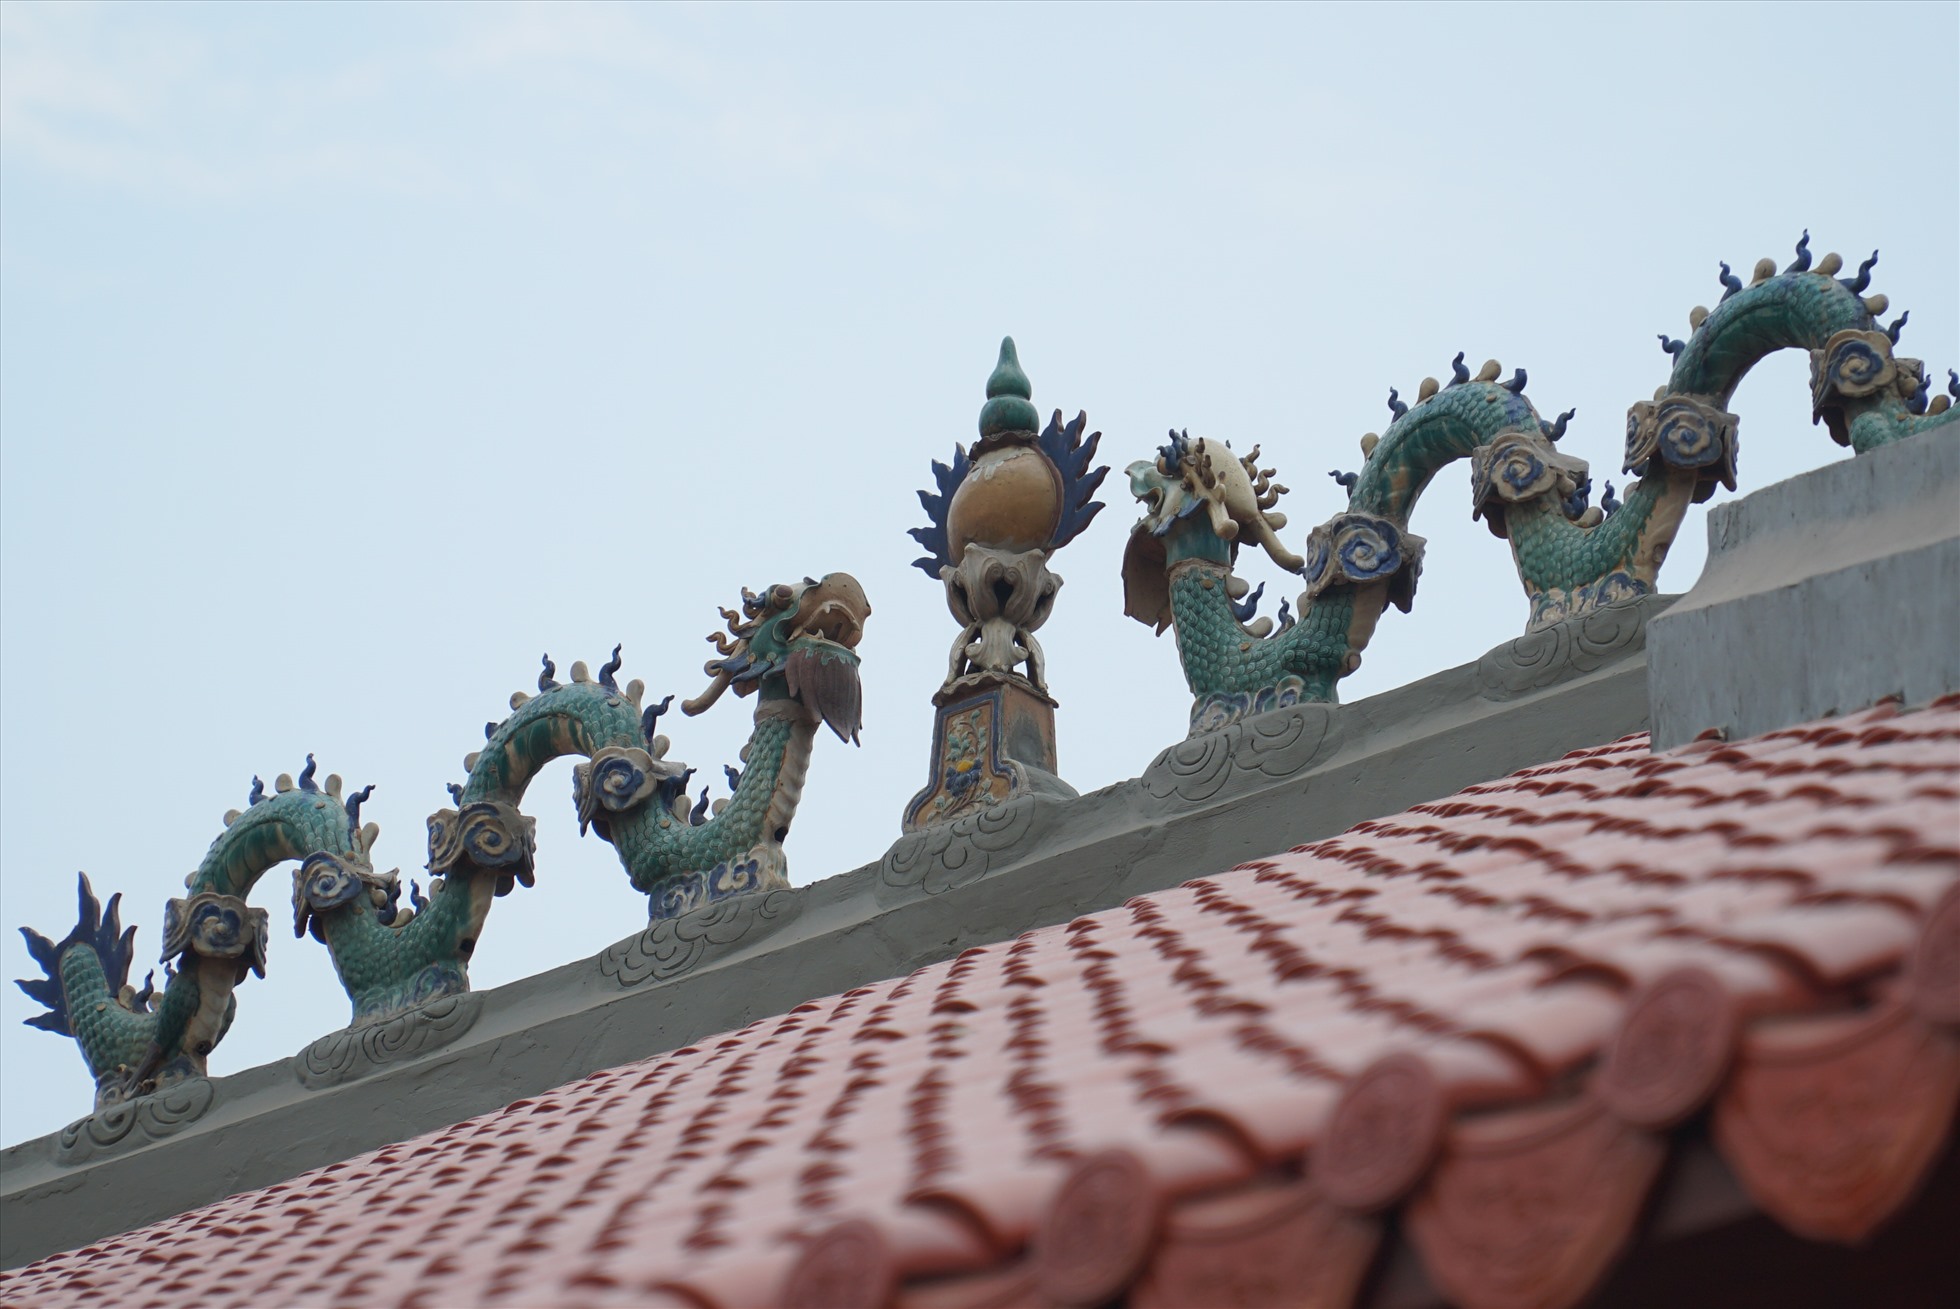 Mái nhà lợp ngói âm dương tráng men mang kiến trúc đình làng truyền thống Nam Bộ. Trên nóc đình có gắn tượng “Lưỡng long tranh châu“.